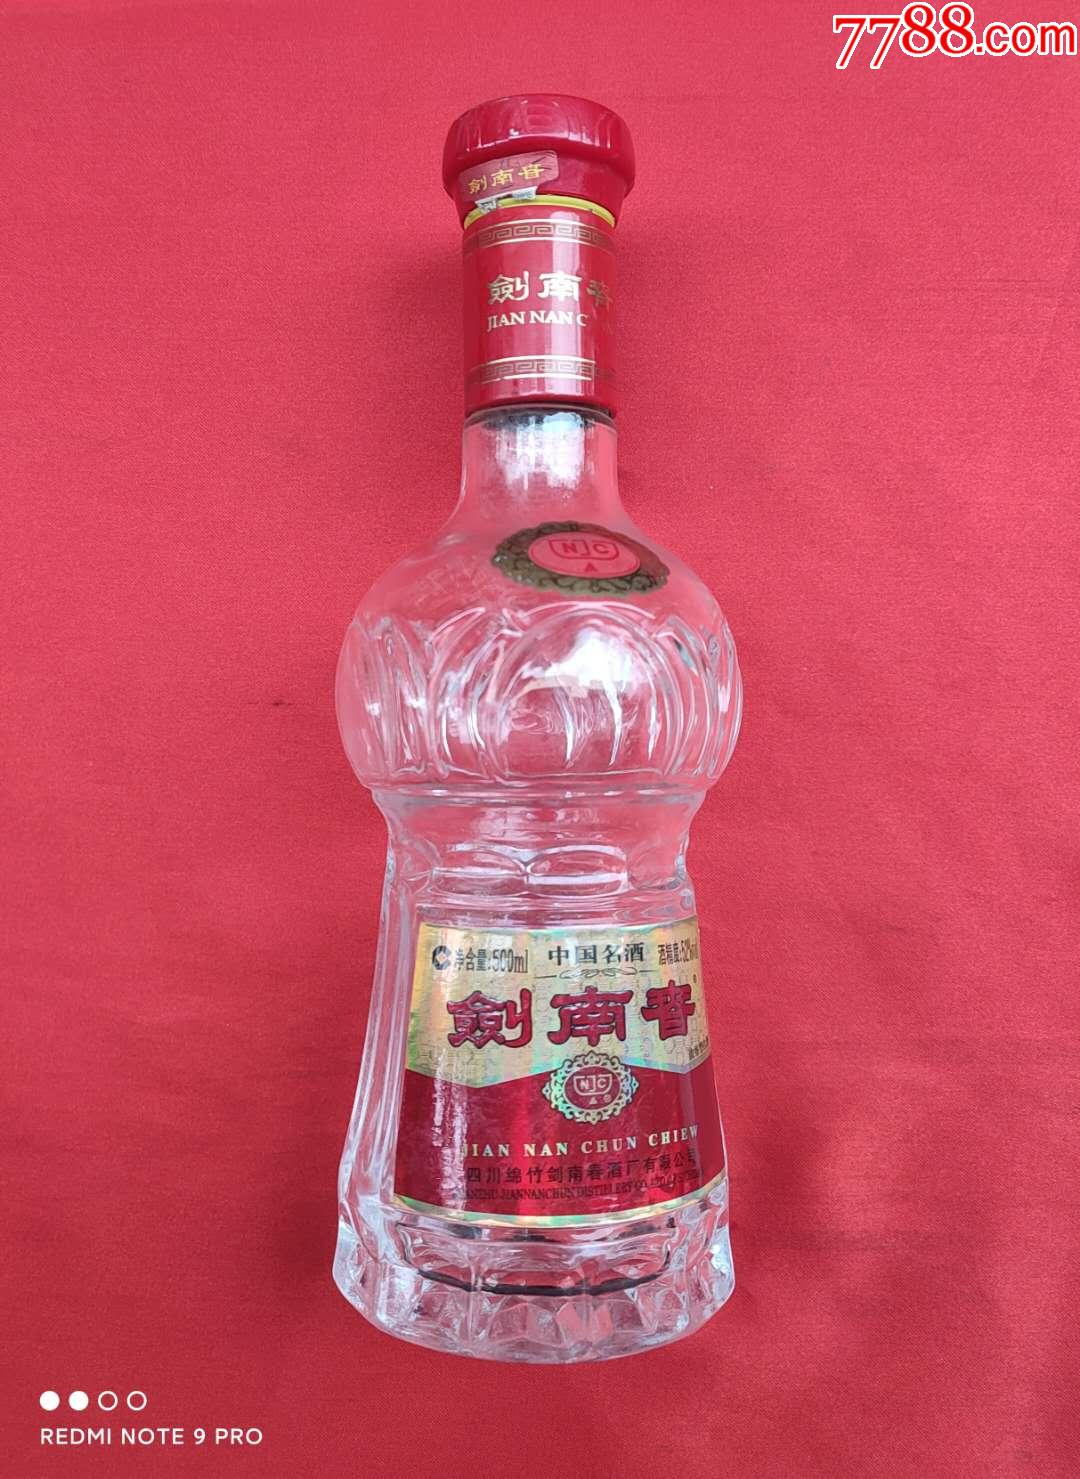 中国名酒剑南春酒瓶带有典故图案